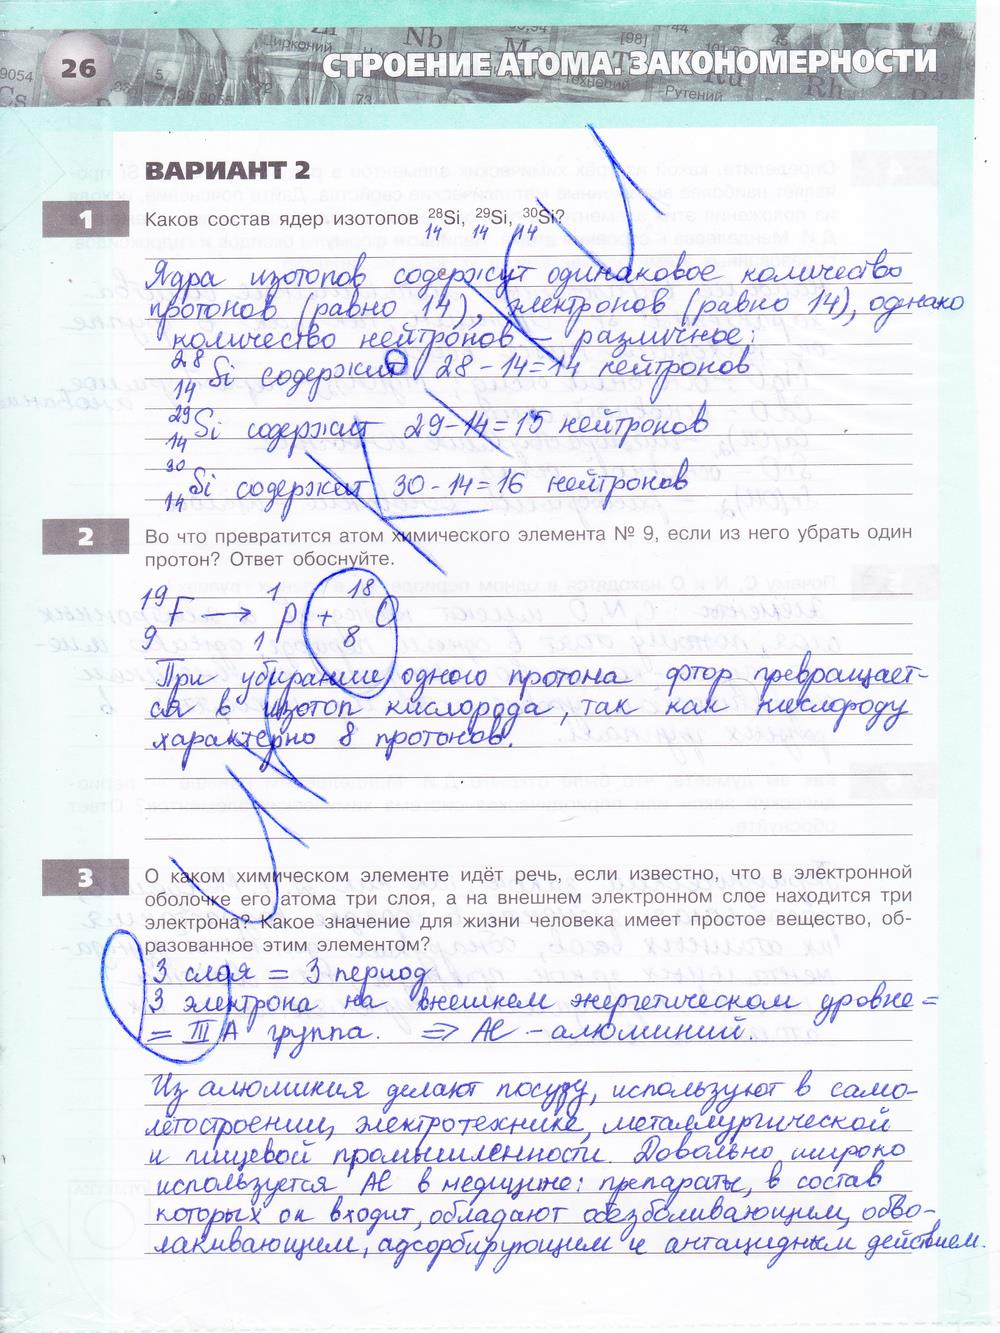 гдз 8 класс тетрадь-экзаменатор страница 26 химия Бобылева, Бирюлина